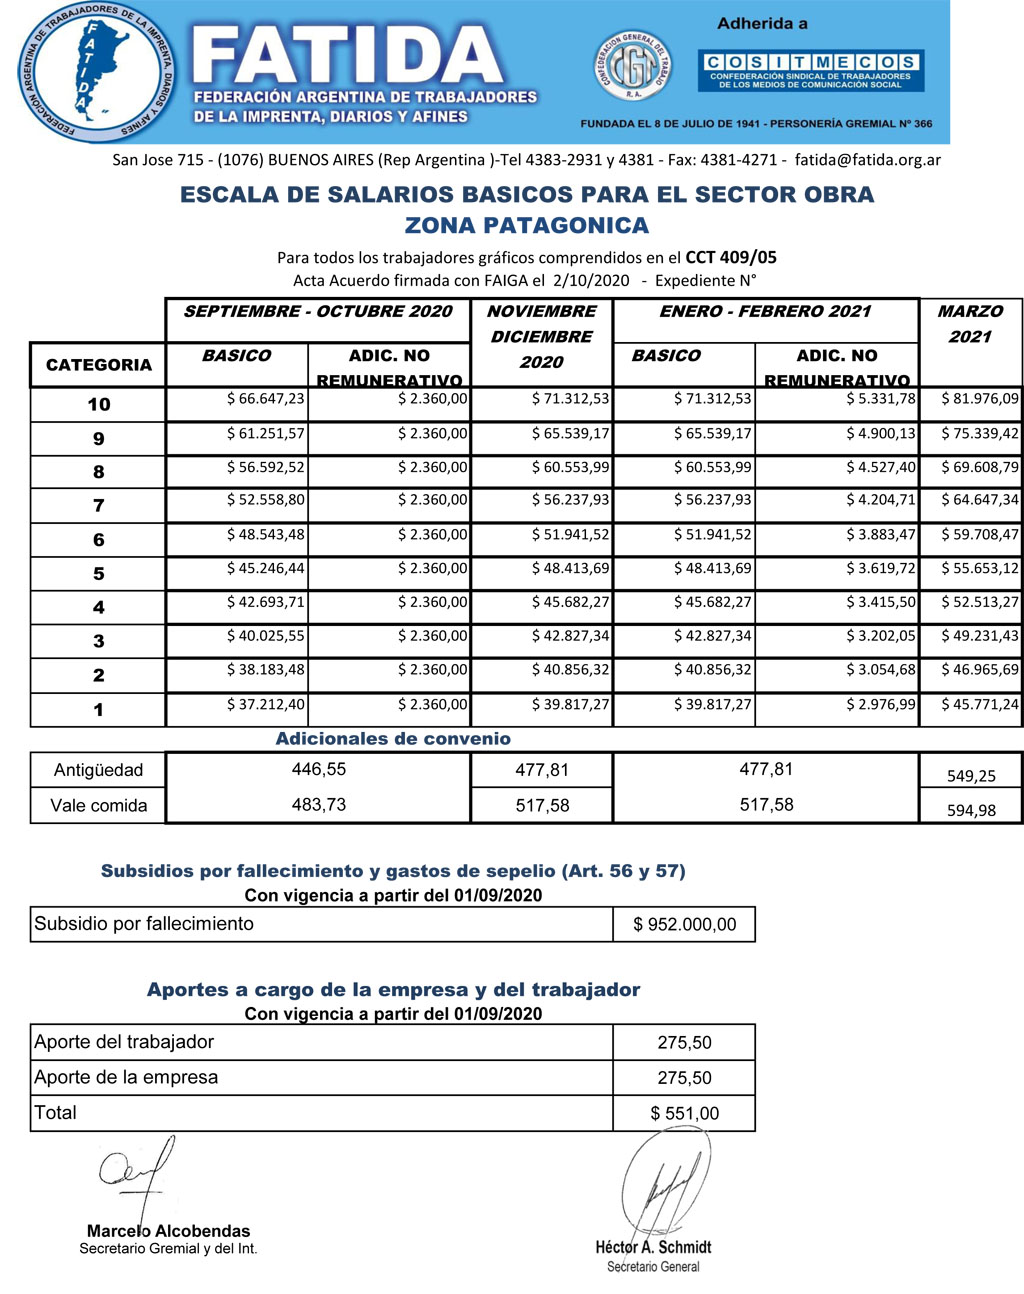 Escala salarial Obra – Zona Patagónica – Septiembre 2020 – Marzo 2021